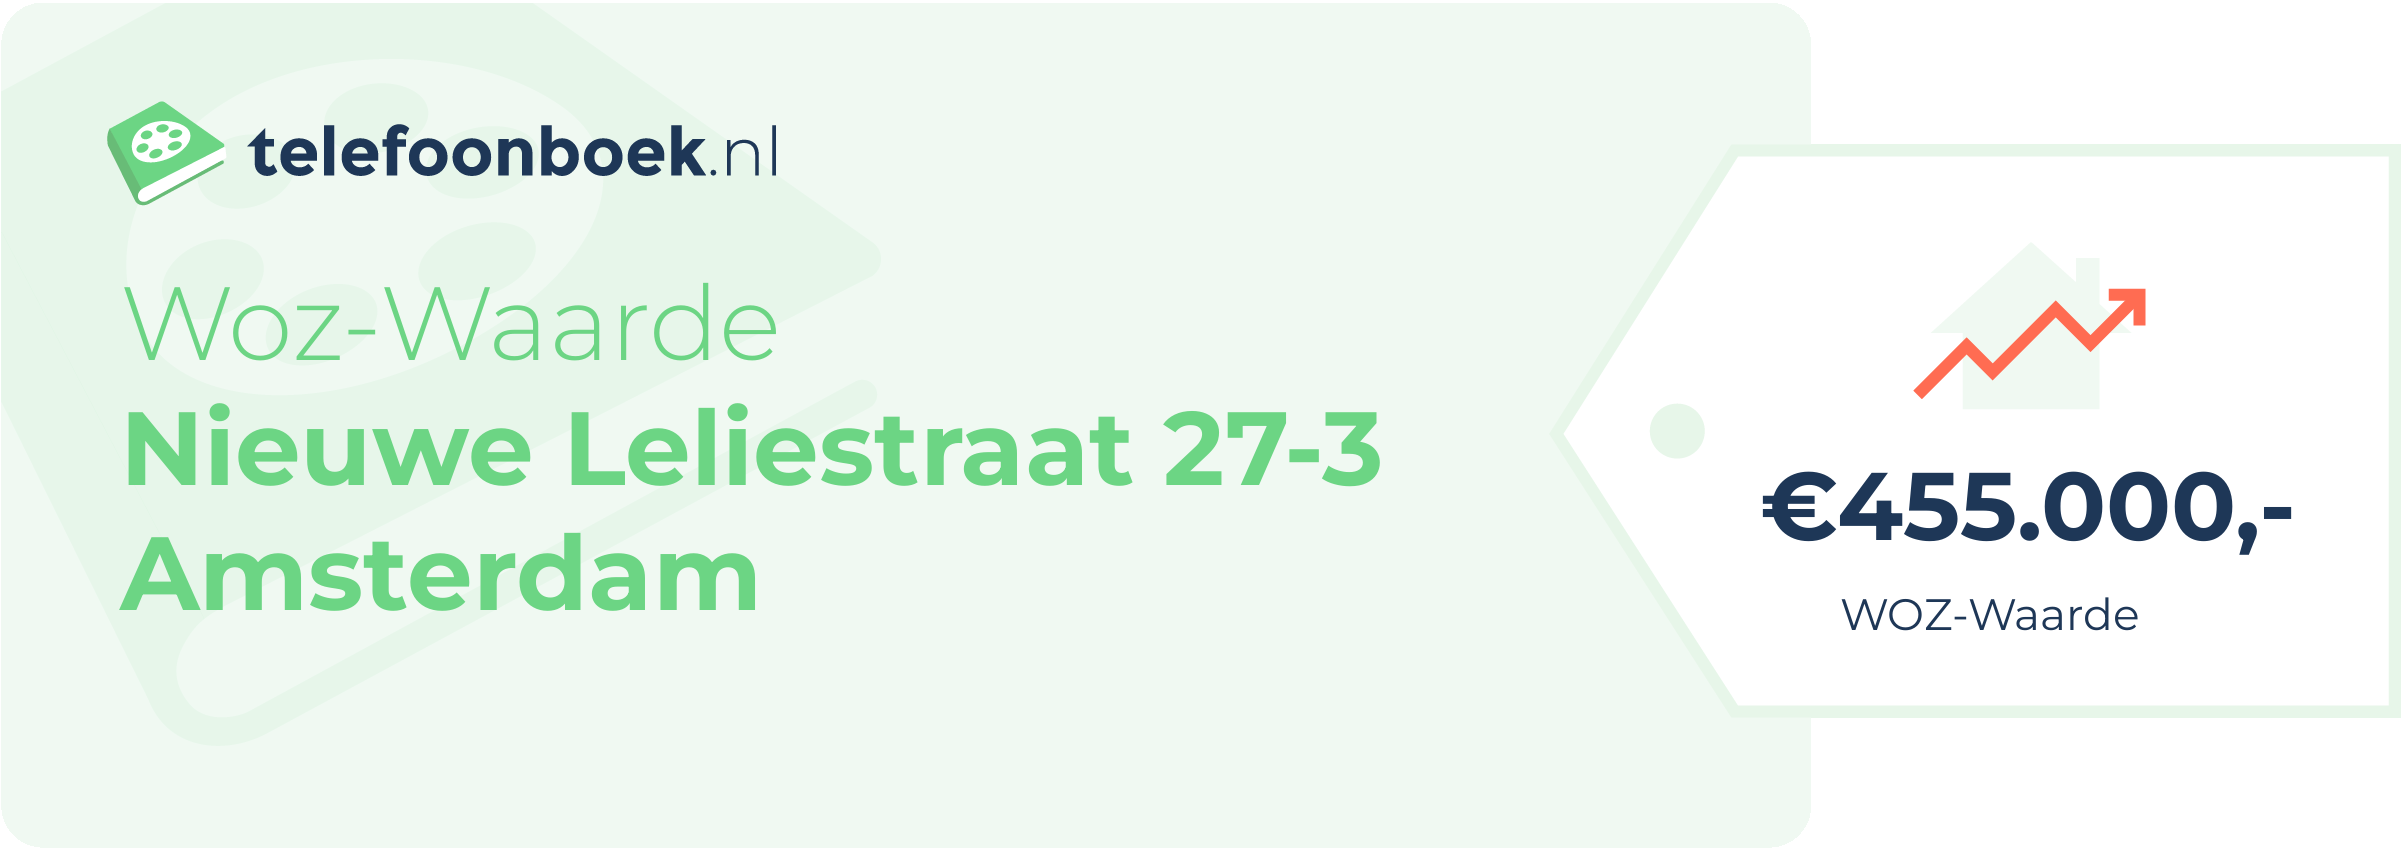 WOZ-waarde Nieuwe Leliestraat 27-3 Amsterdam